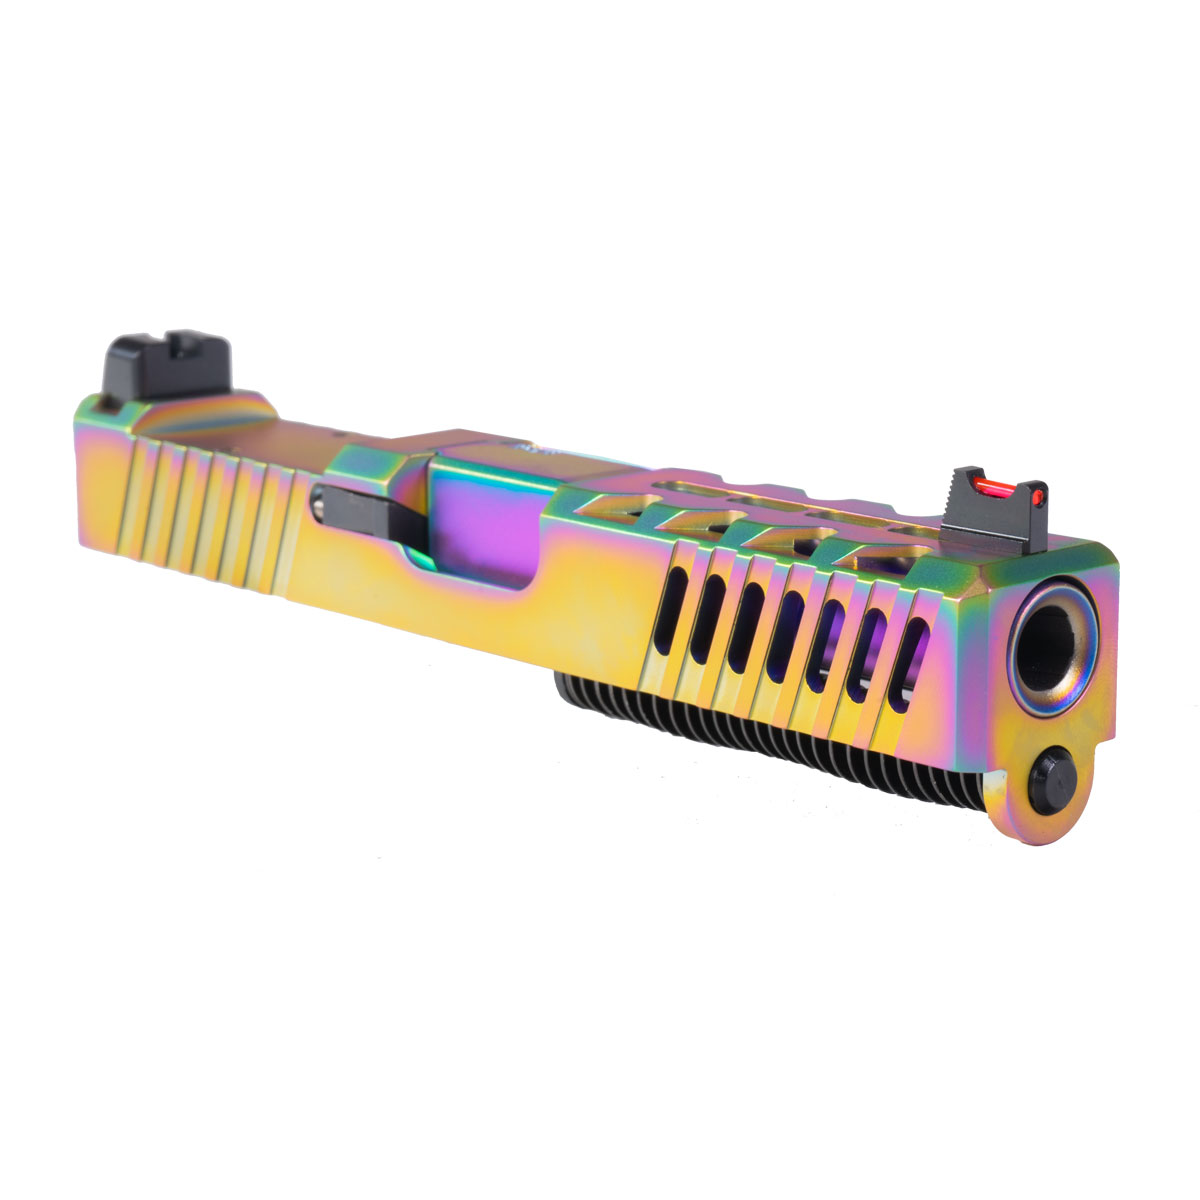 OTD 'Polychrome Pursuit' 9mm Complete Slide Kit - Glock 19 Gen 1-2 Compatible